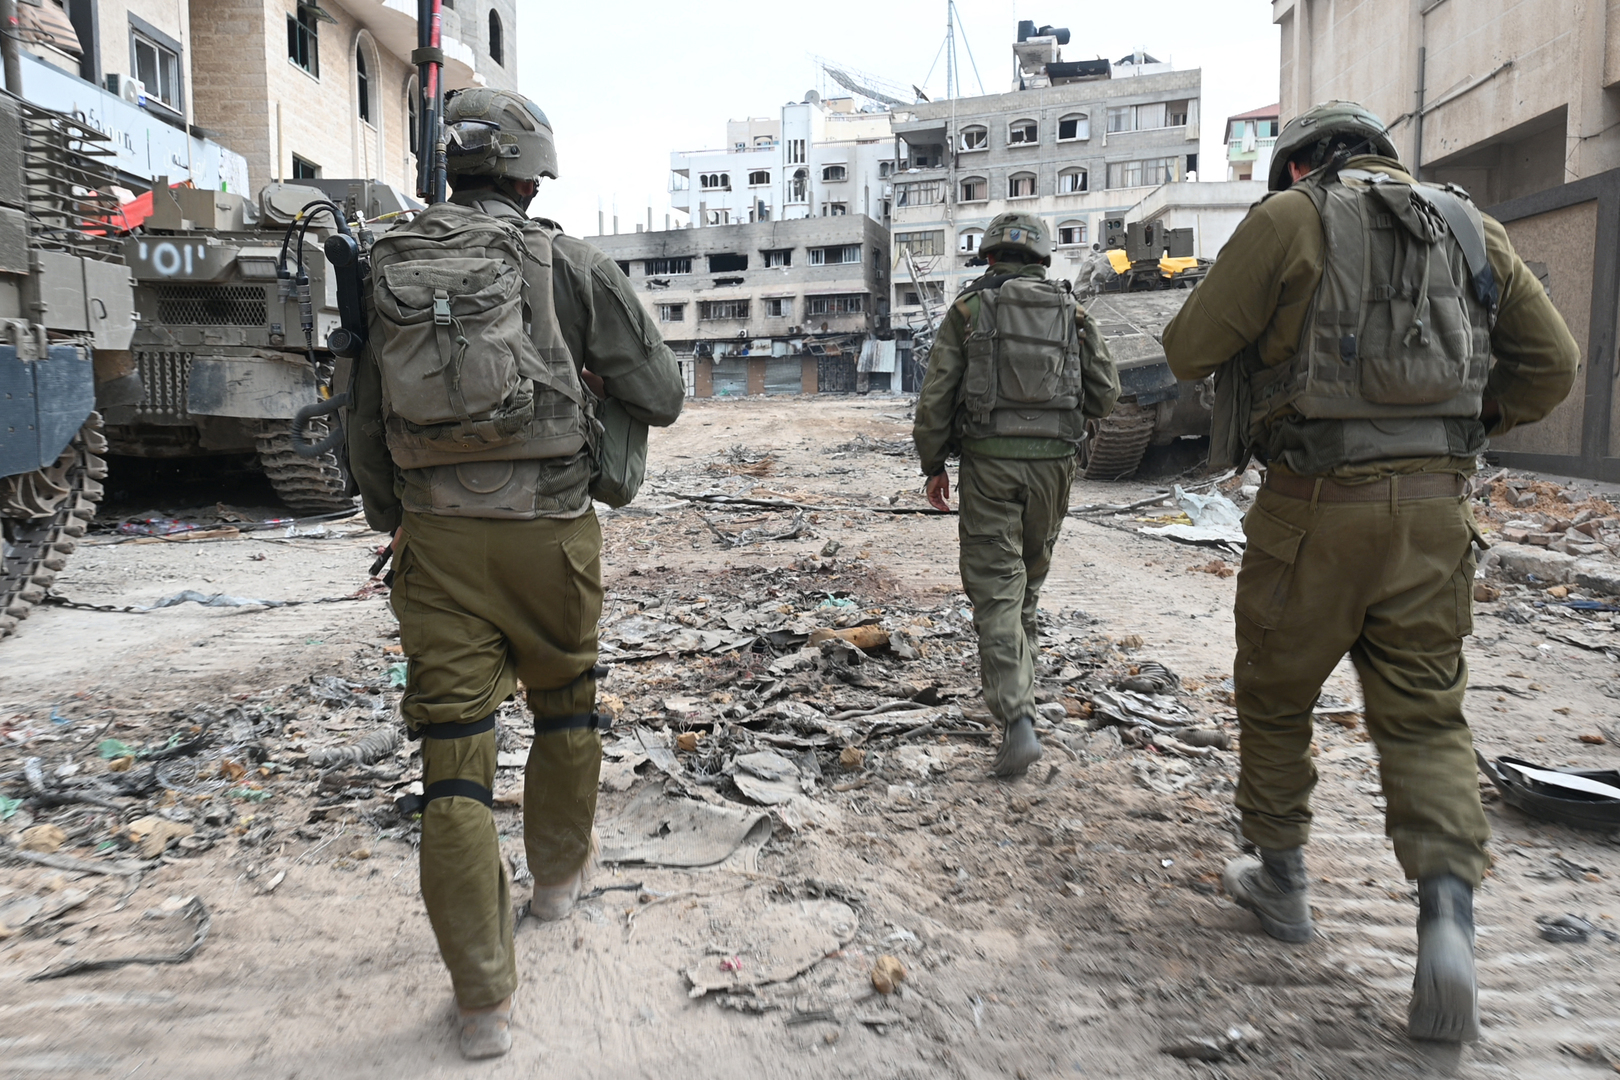 الجيش الإسرائيلي يعترف بإصابة عميد في صفوفه بمعارك وسط قطاع غزة